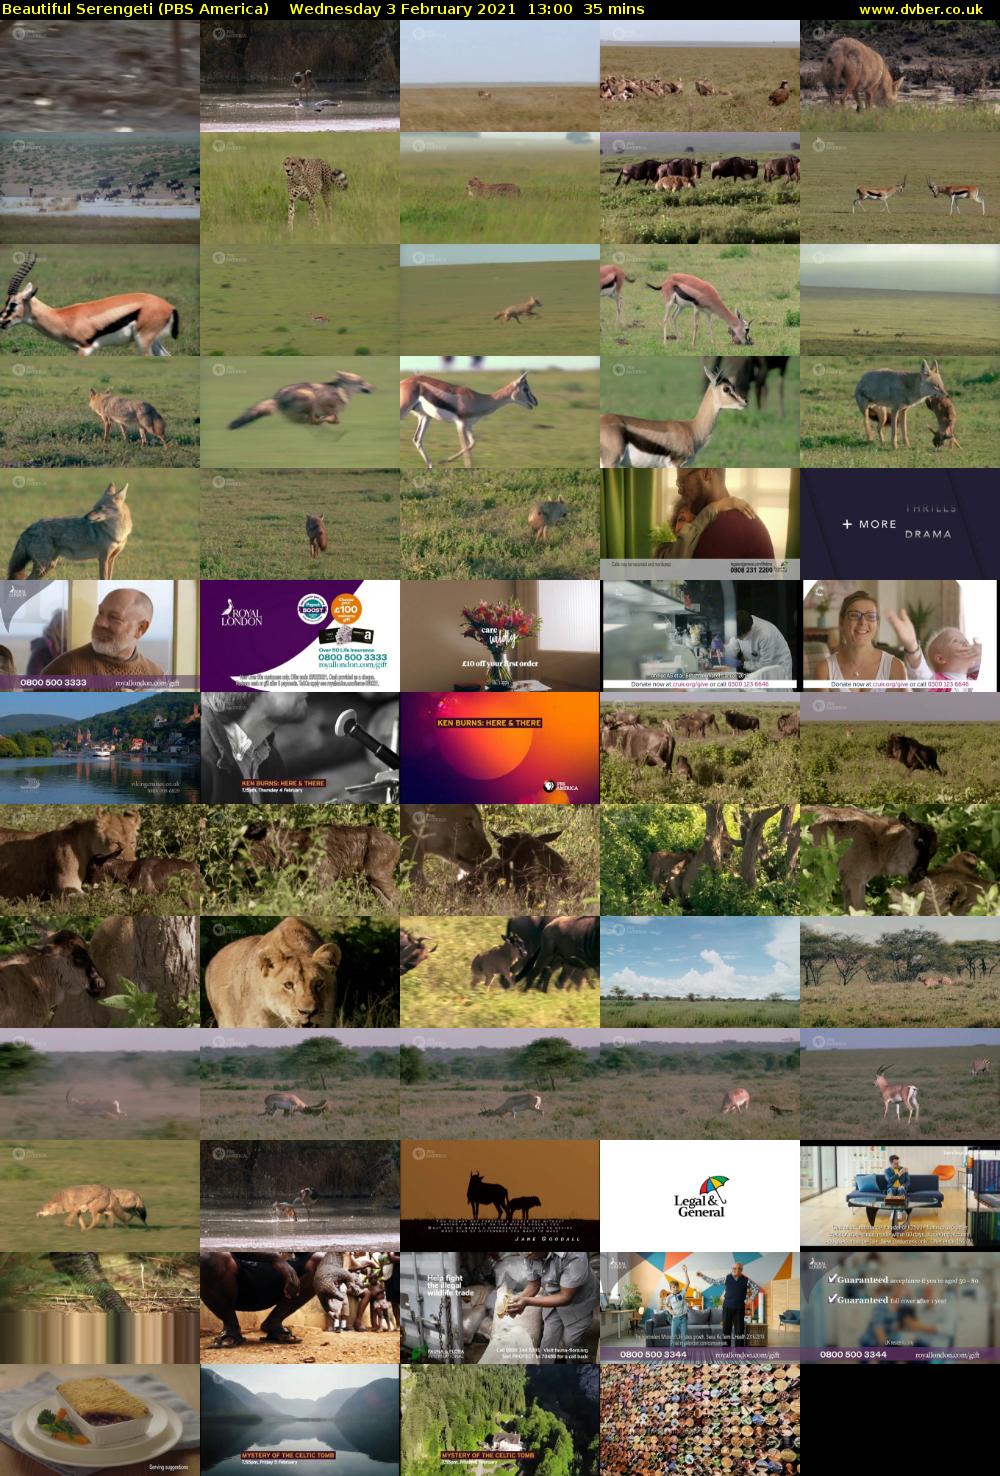 Beautiful Serengeti (PBS America) Wednesday 3 February 2021 13:00 - 13:35